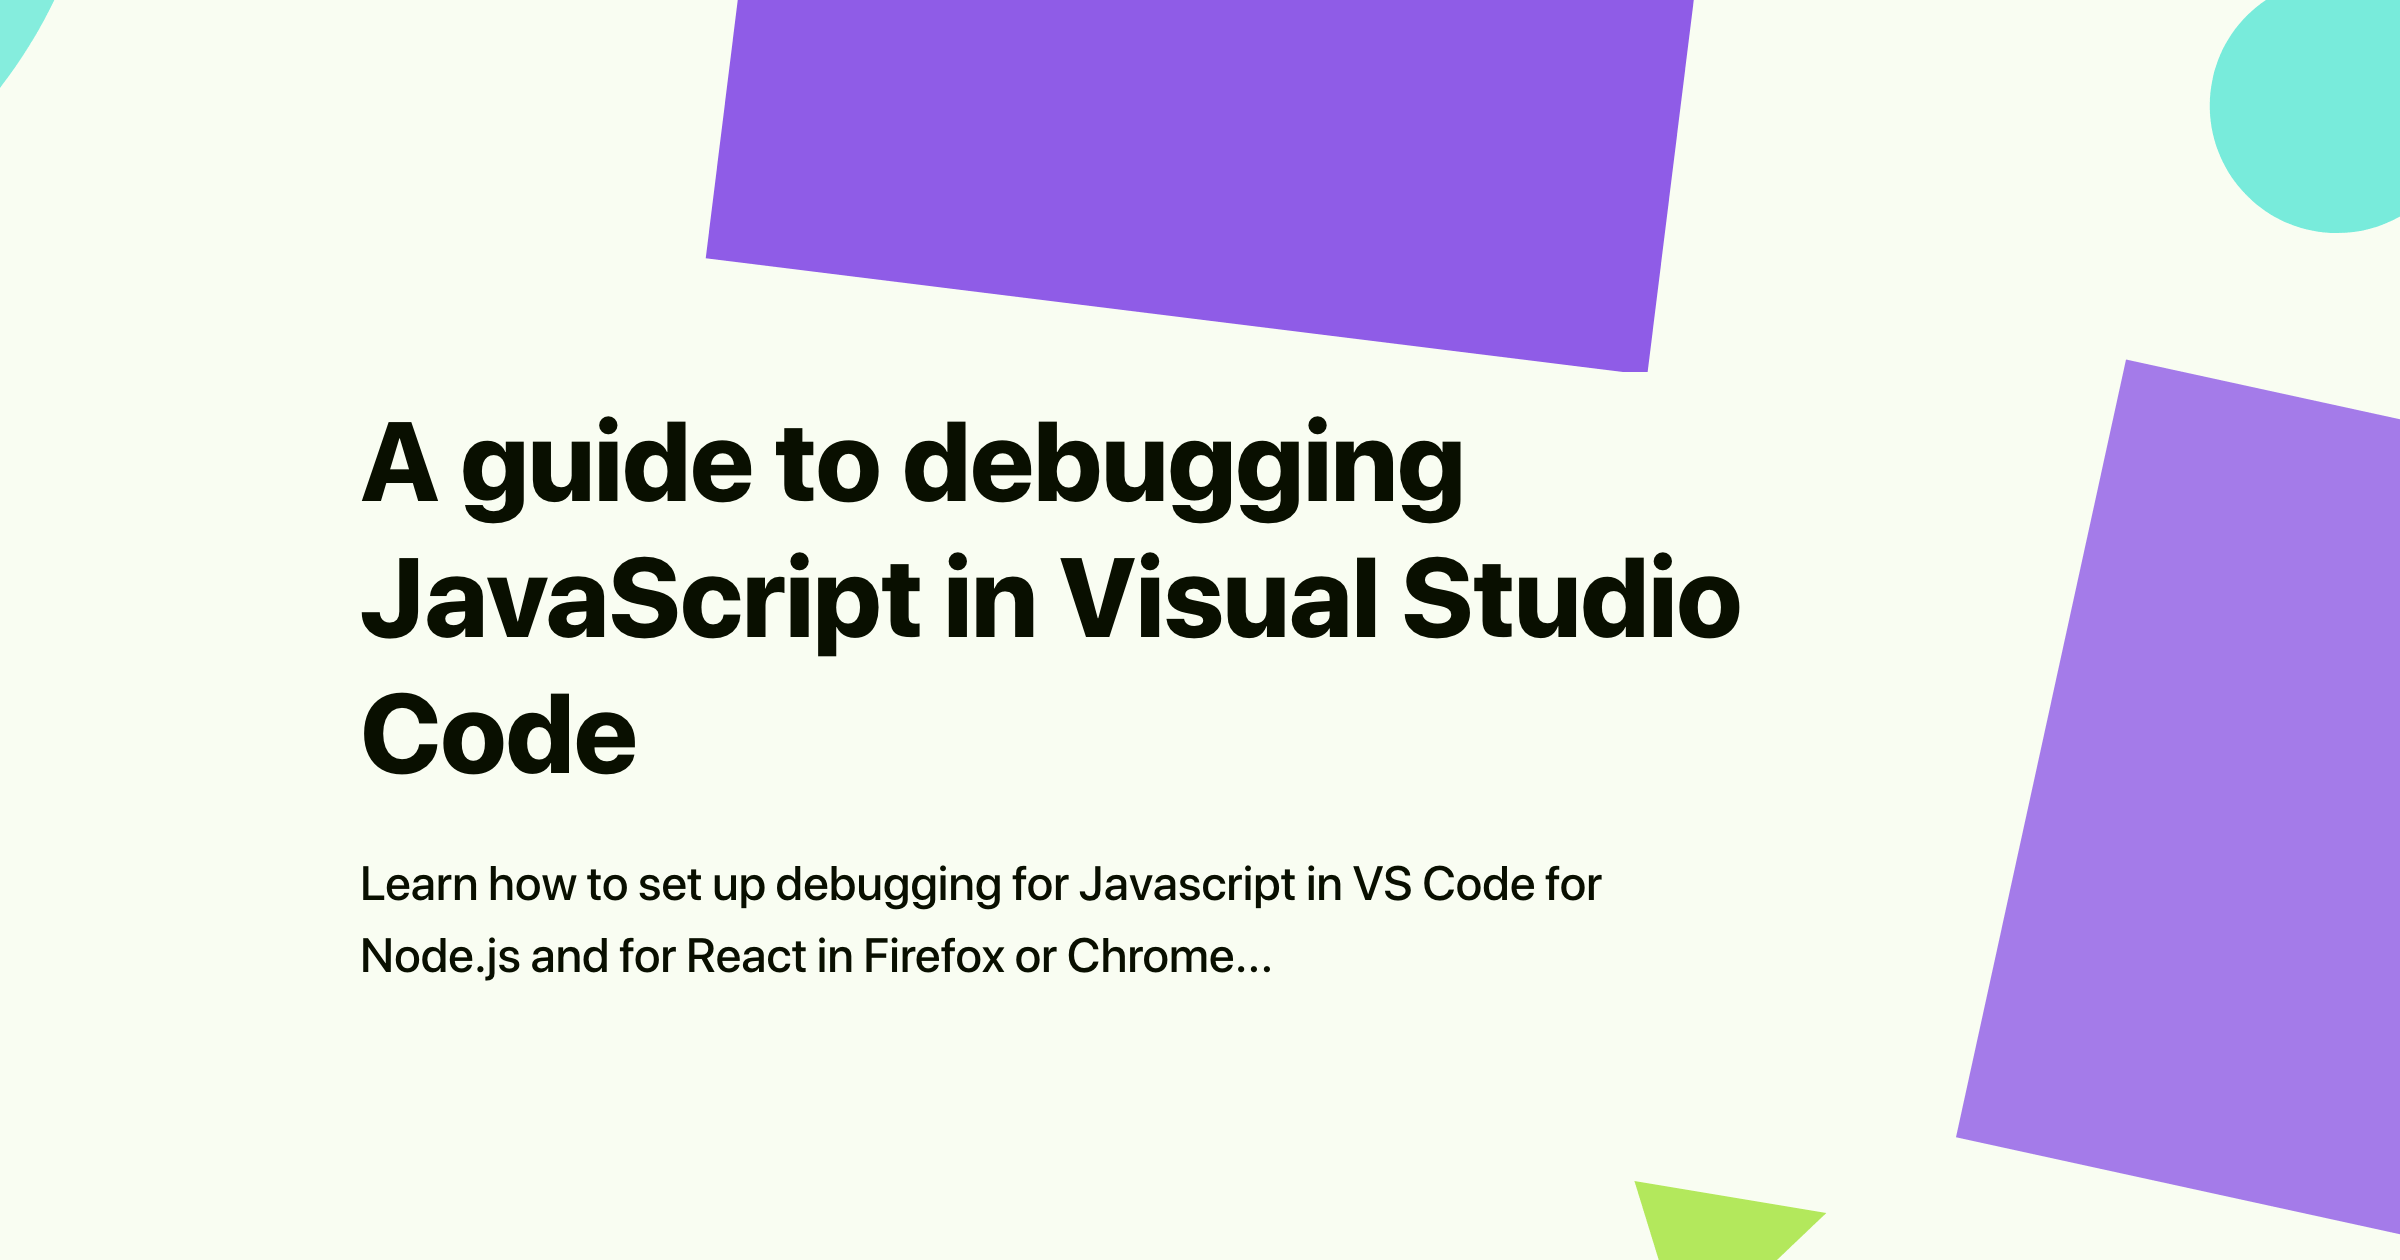 A guide to debugging JavaScript in Visual Studio Code